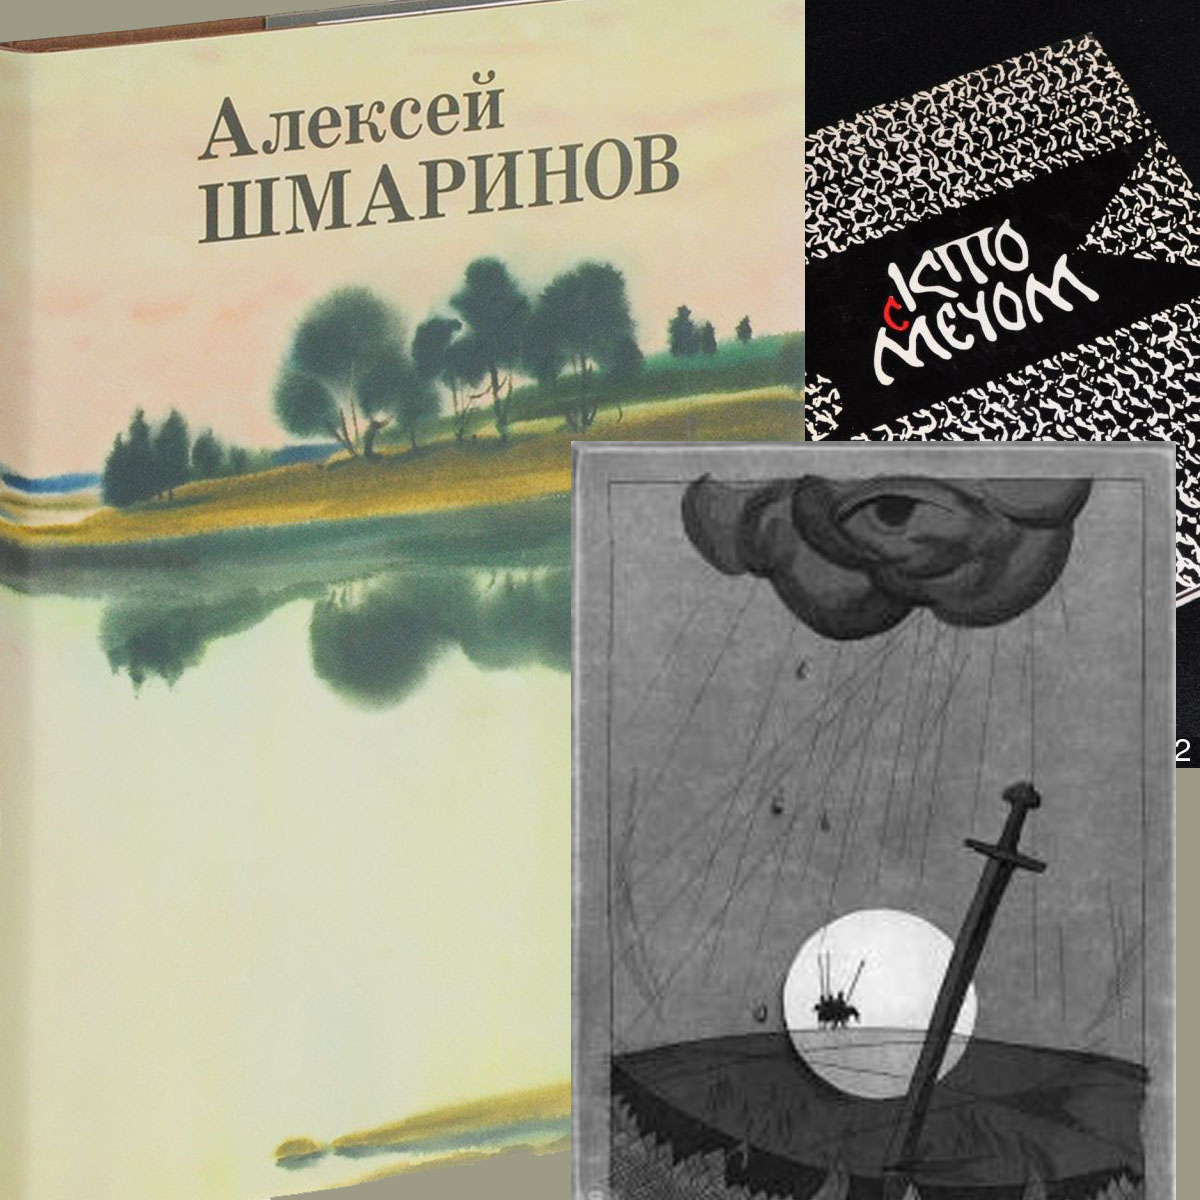 Книжная выставка к 85-летию А. Д. Шмаринова